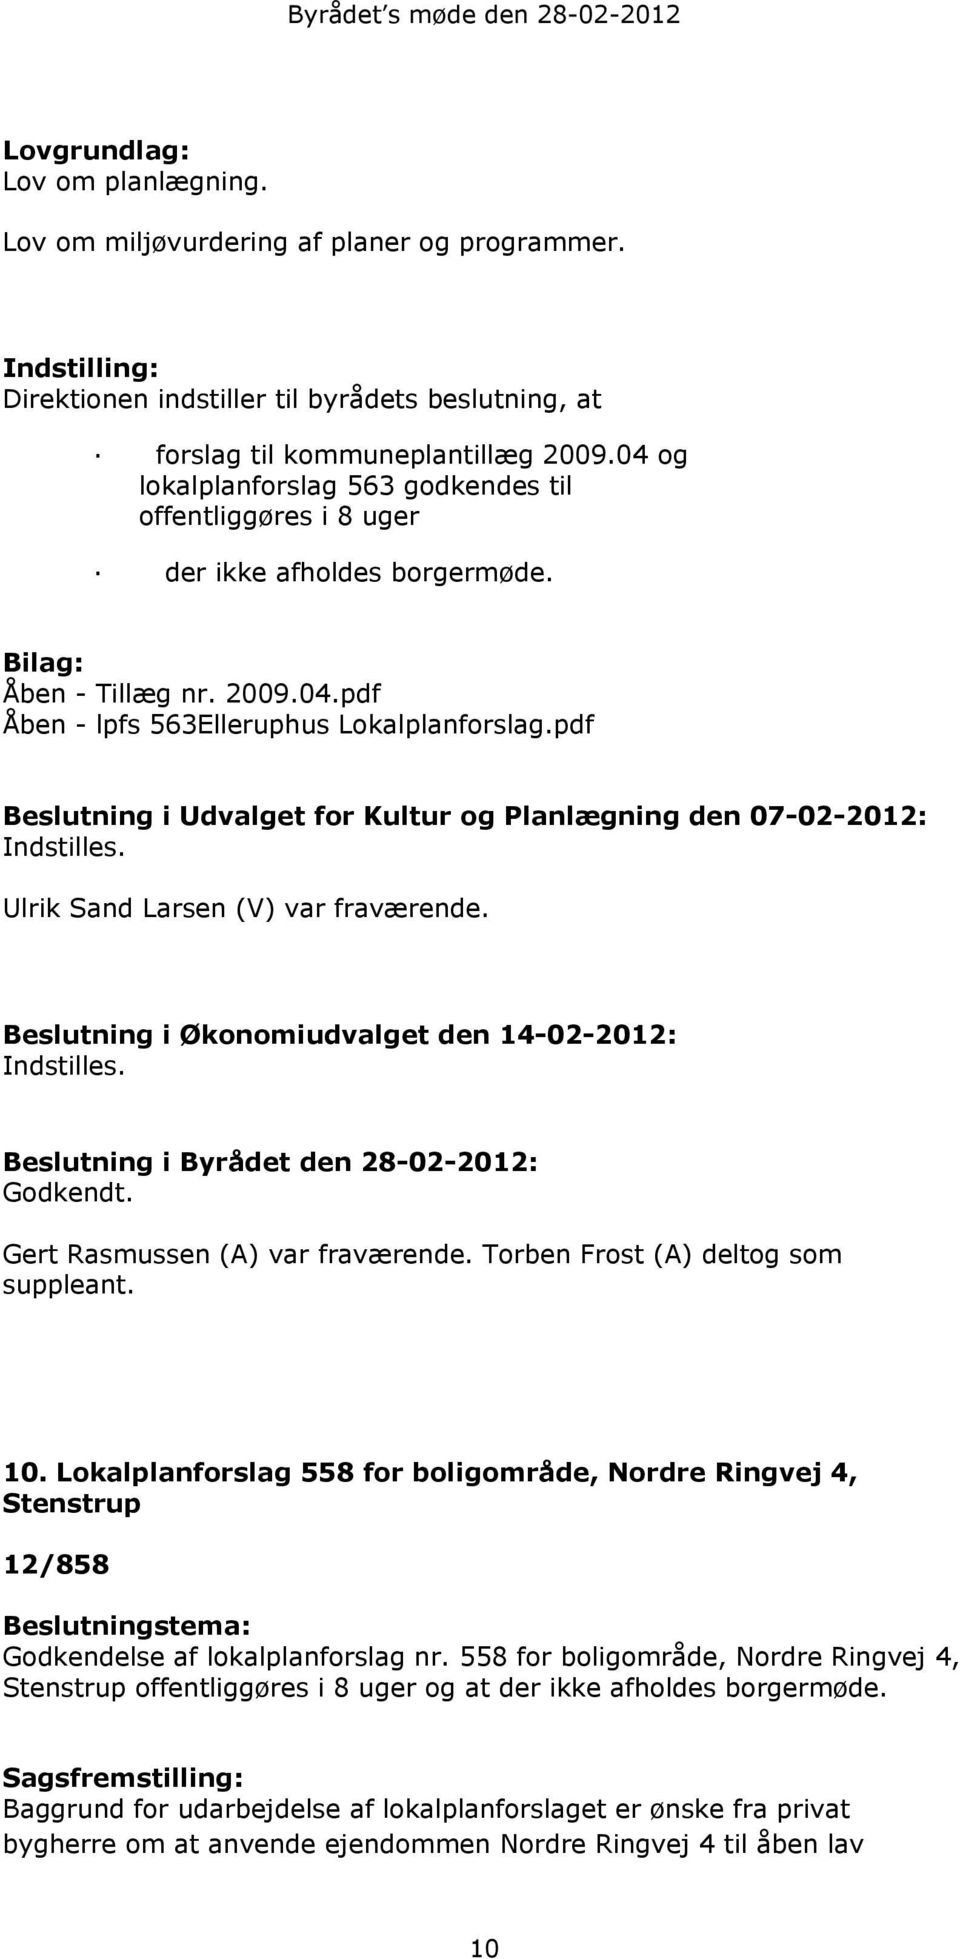 Bilag: Åben - Tillæg nr. 2009.04.pdf Åben - lpfs 563Elleruphus Lokalplanforslag.pdf Beslutning i Udvalget for Kultur og Planlægning den 07-02-2012: Indstilles. Ulrik Sand Larsen (V) var fraværende.